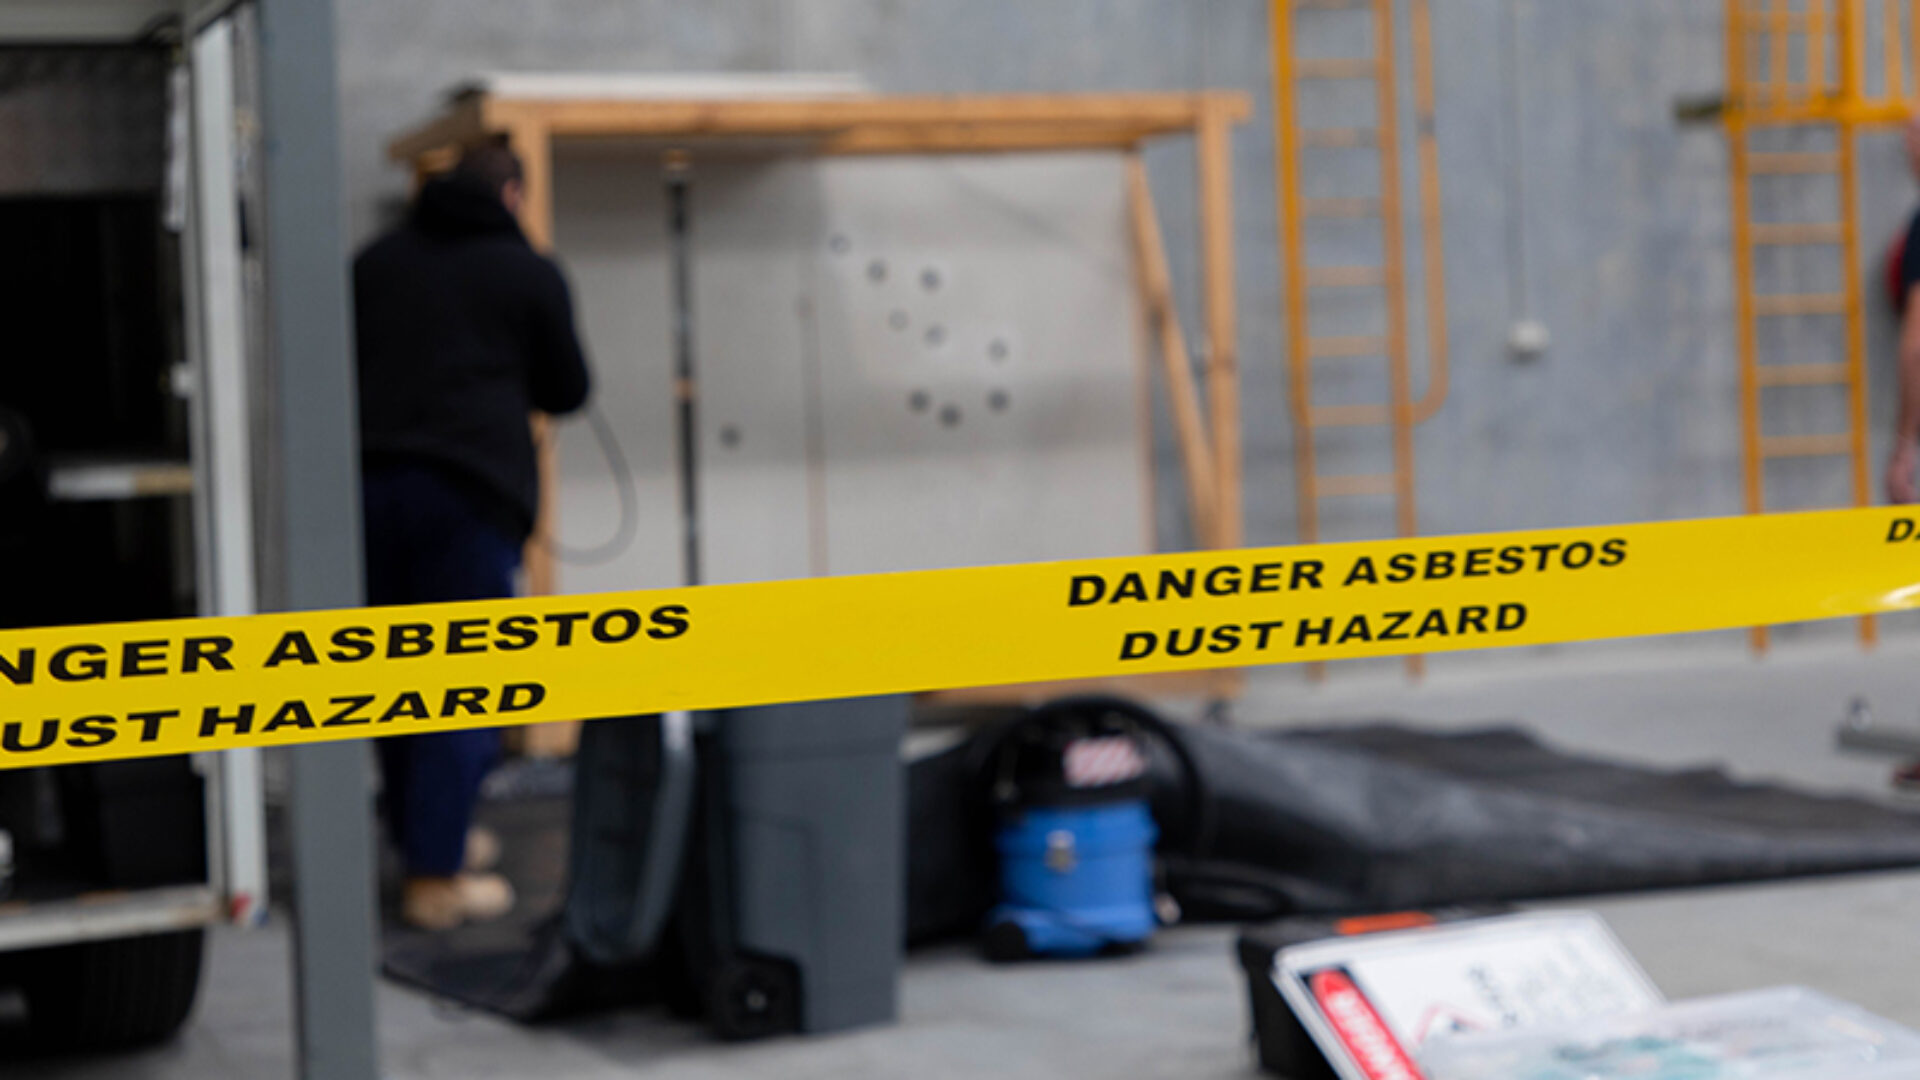 Asbestos warning tape.